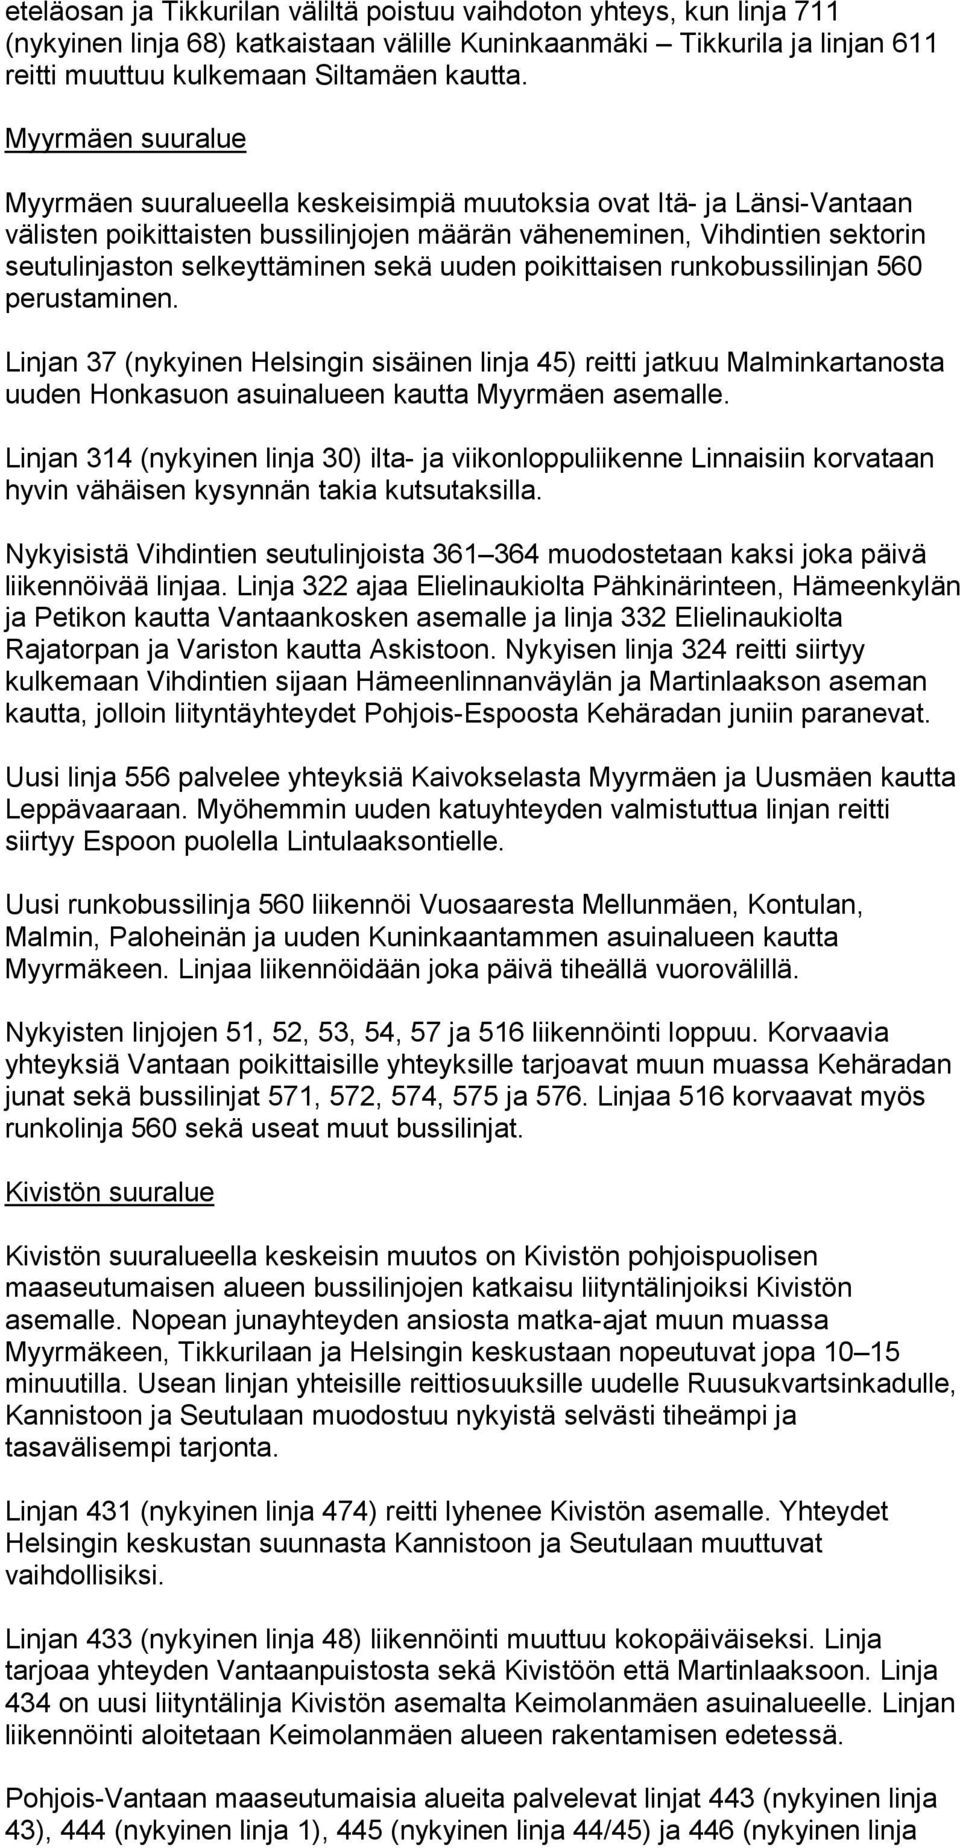 sekä uuden poikittaisen runkobussilinjan 560 perustaminen. Linjan 37 (nykyinen Helsingin sisäinen linja 45) reitti jatkuu Malminkartanosta uuden Honkasuon asuinalueen kautta Myyrmäen asemalle.